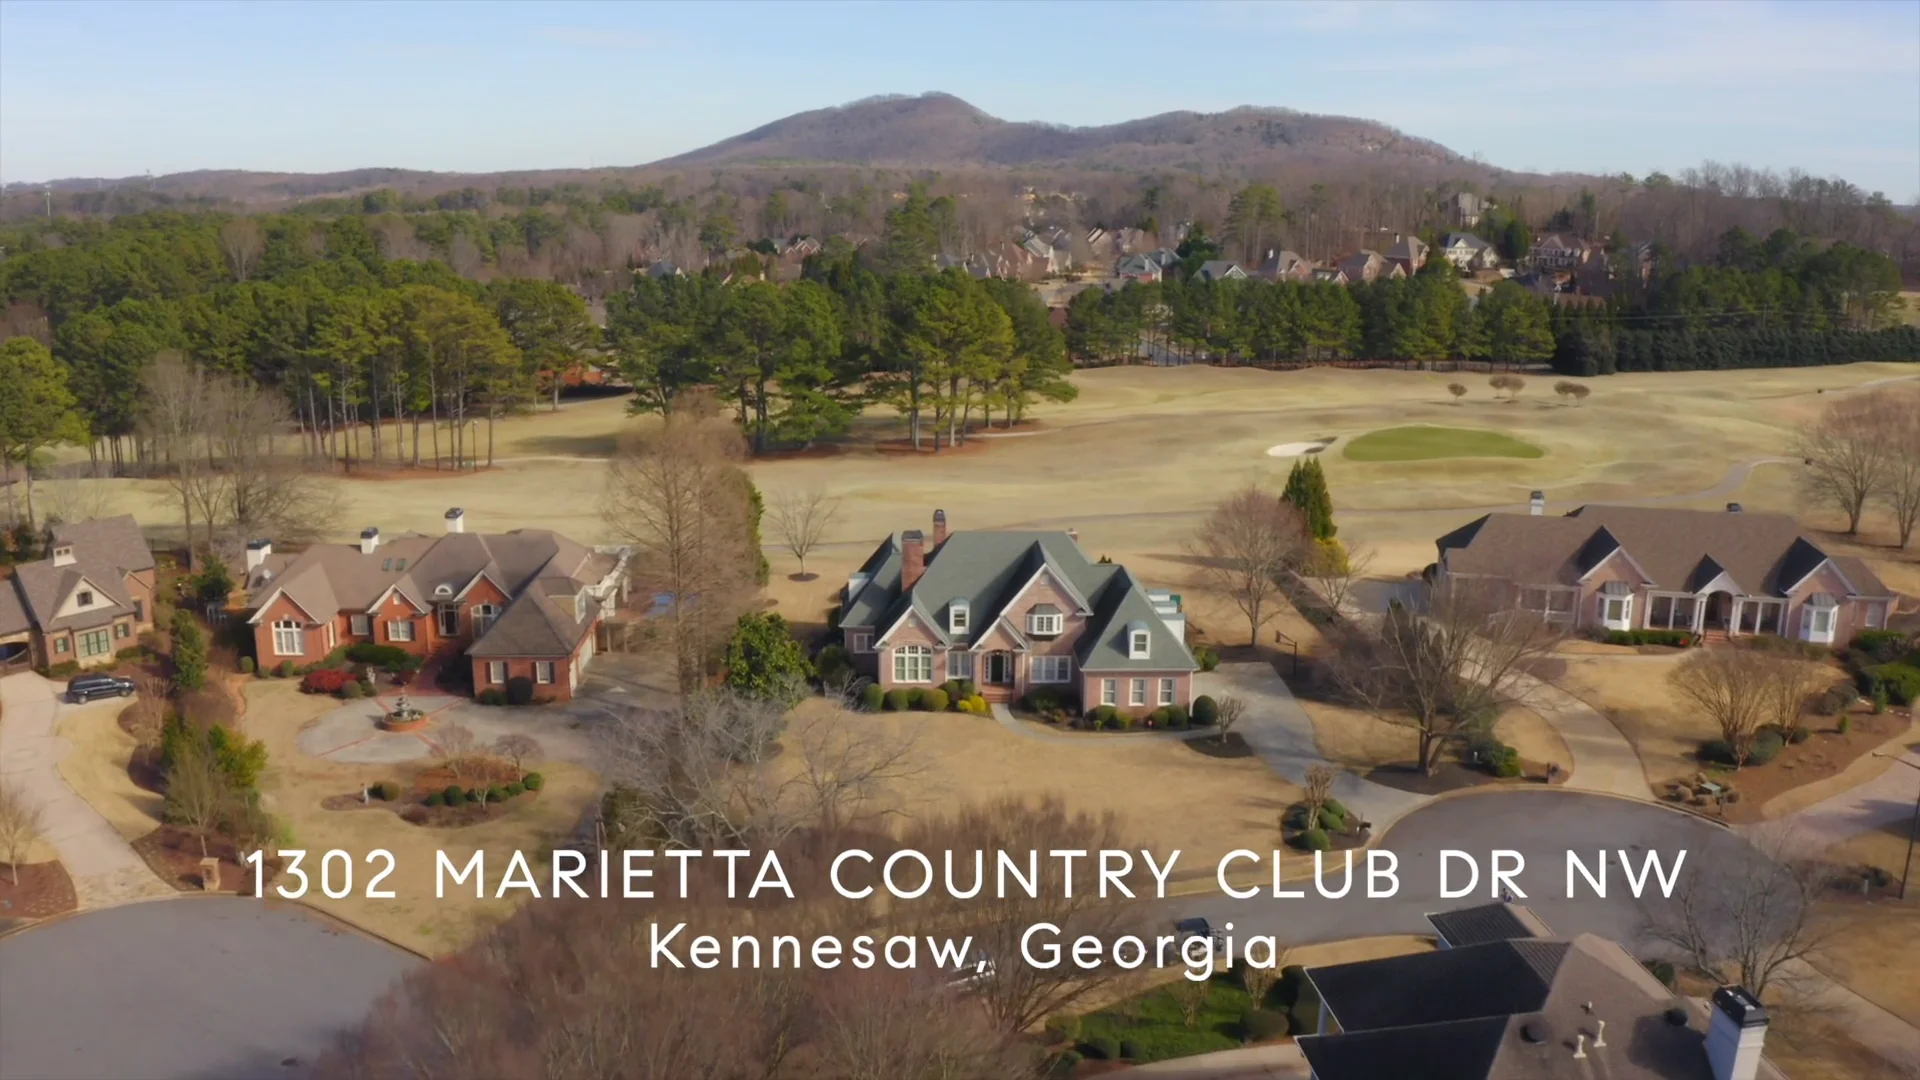 Marietta Country Club Kennesaw, GA